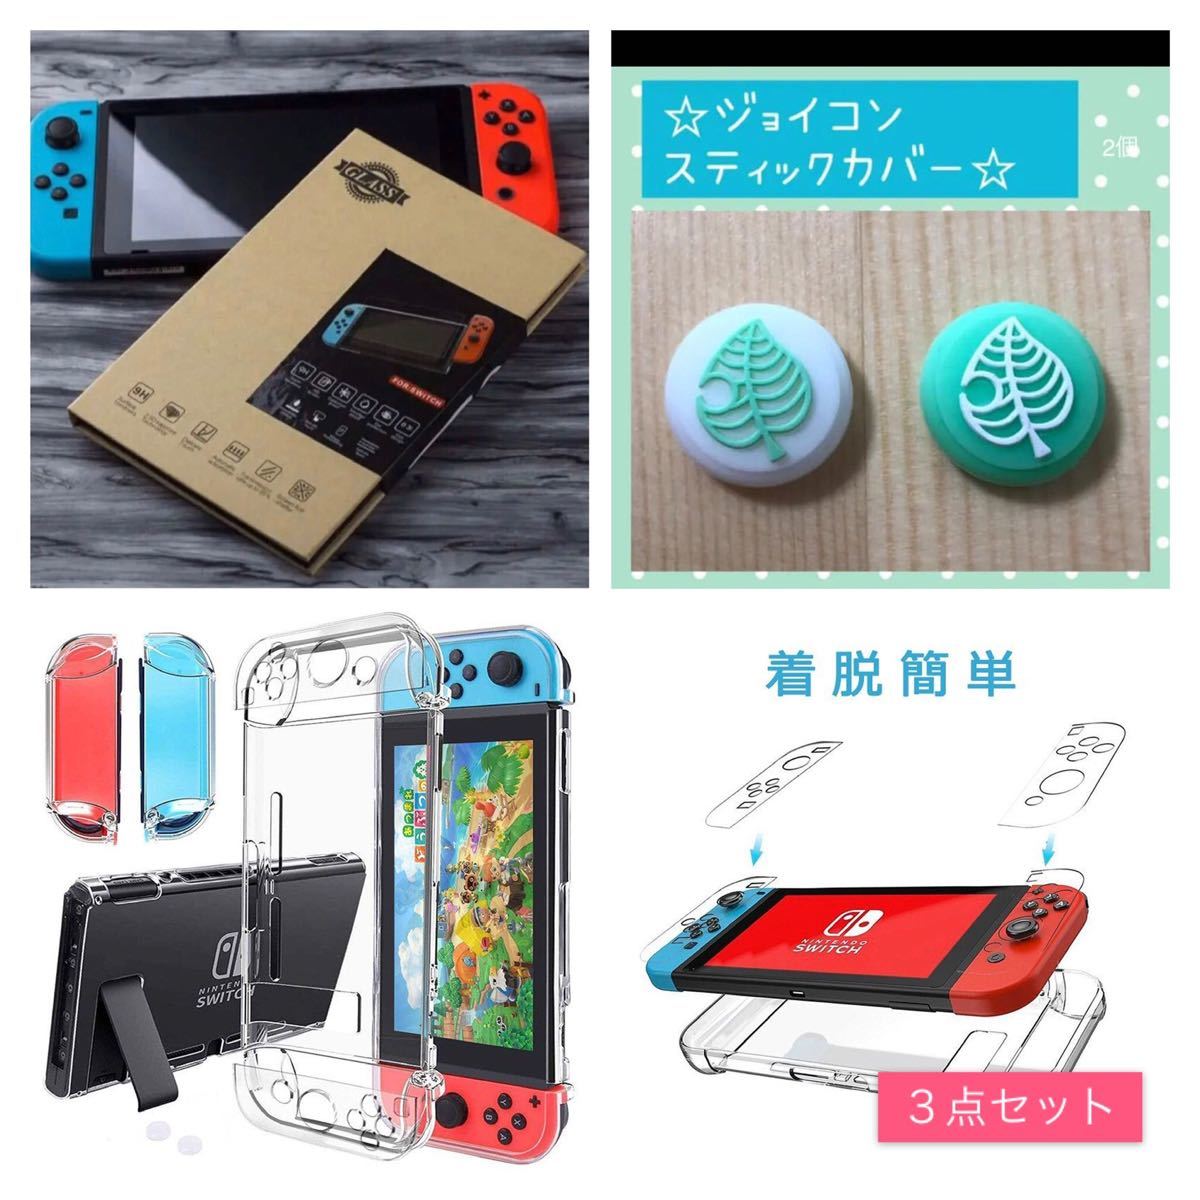 Nintendo Switch 保護カバー +ジョイコン2個+強化ガラスフィルム